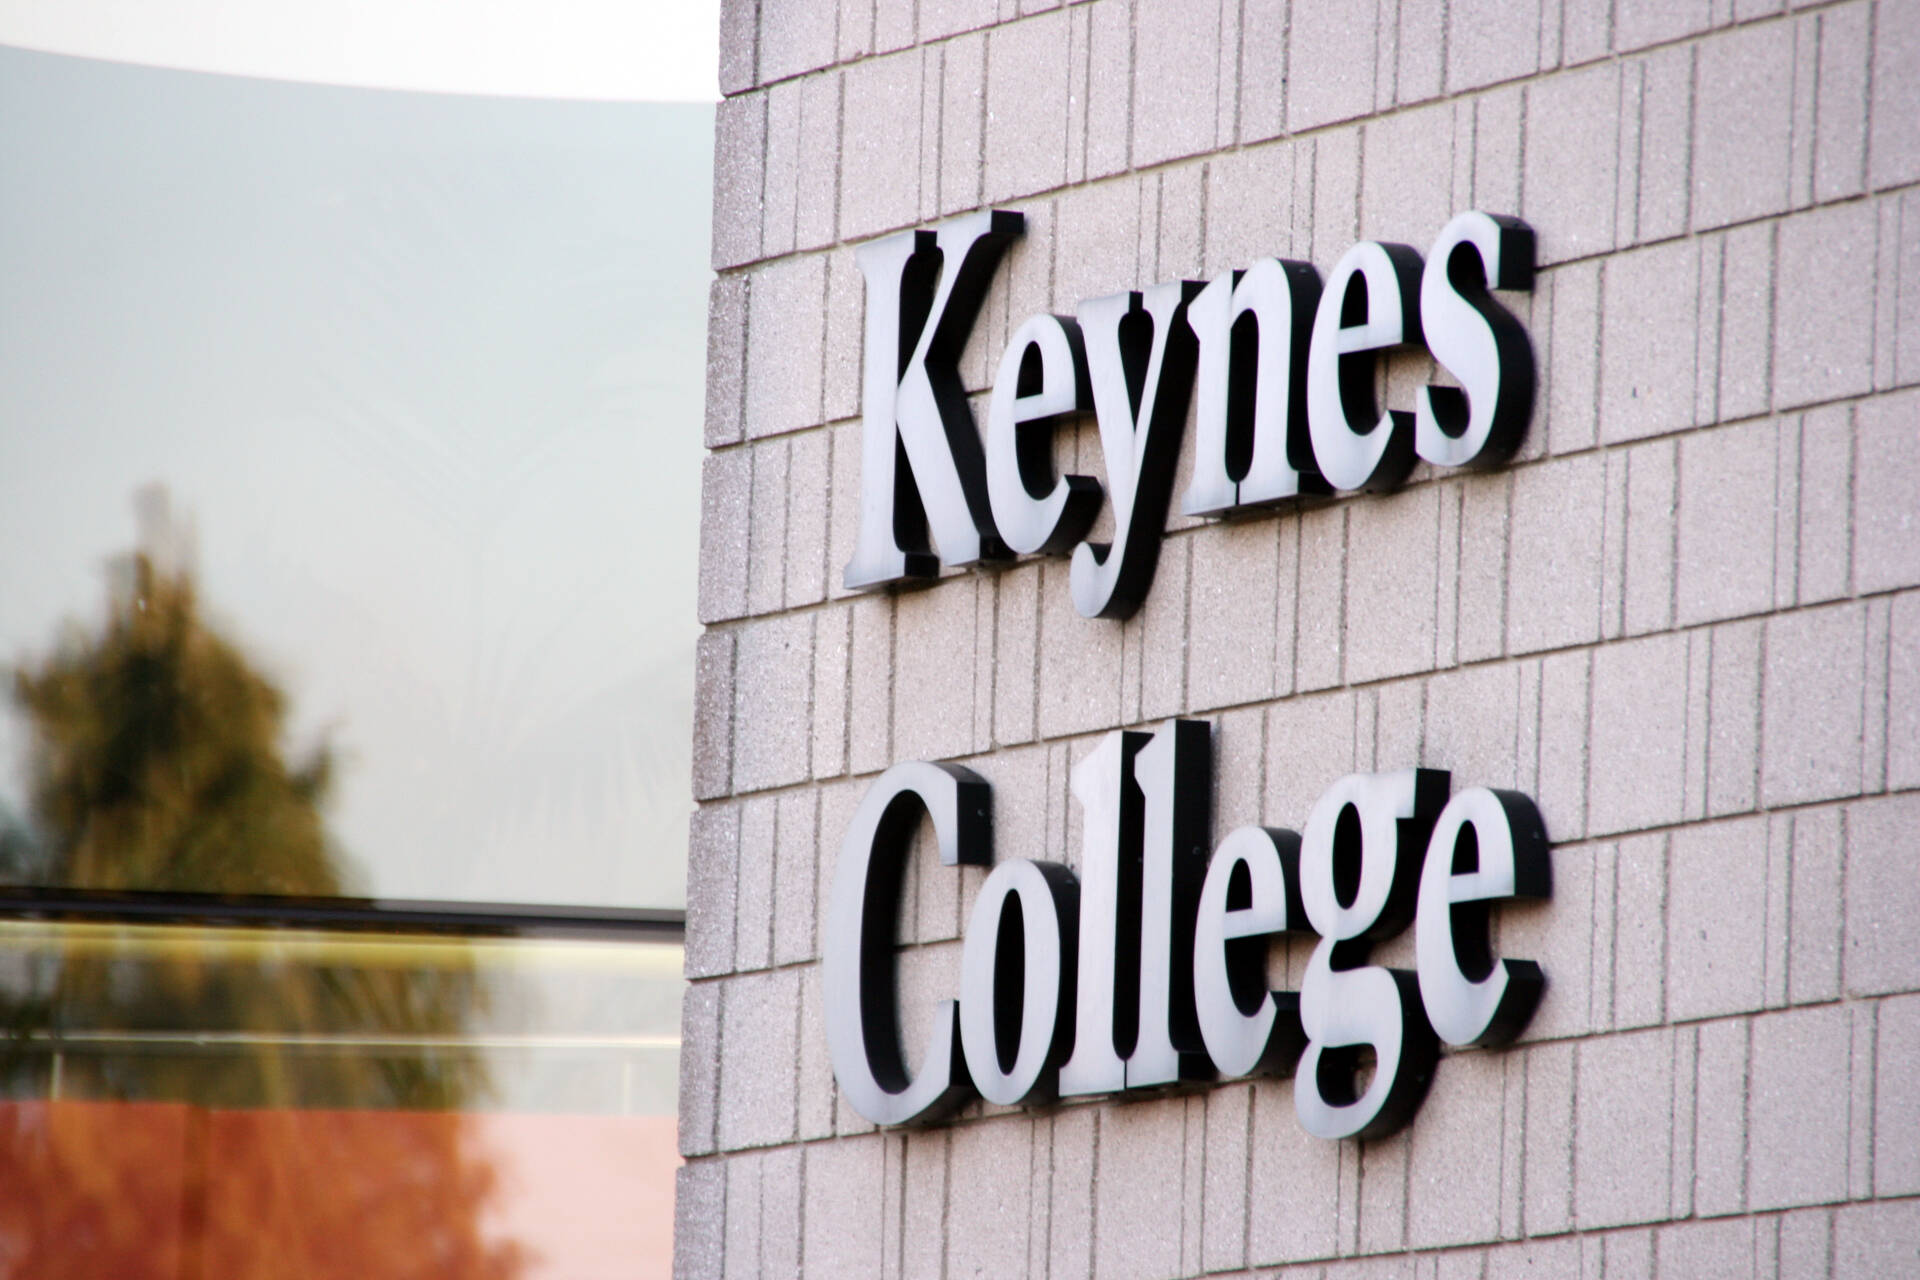 Keynes College